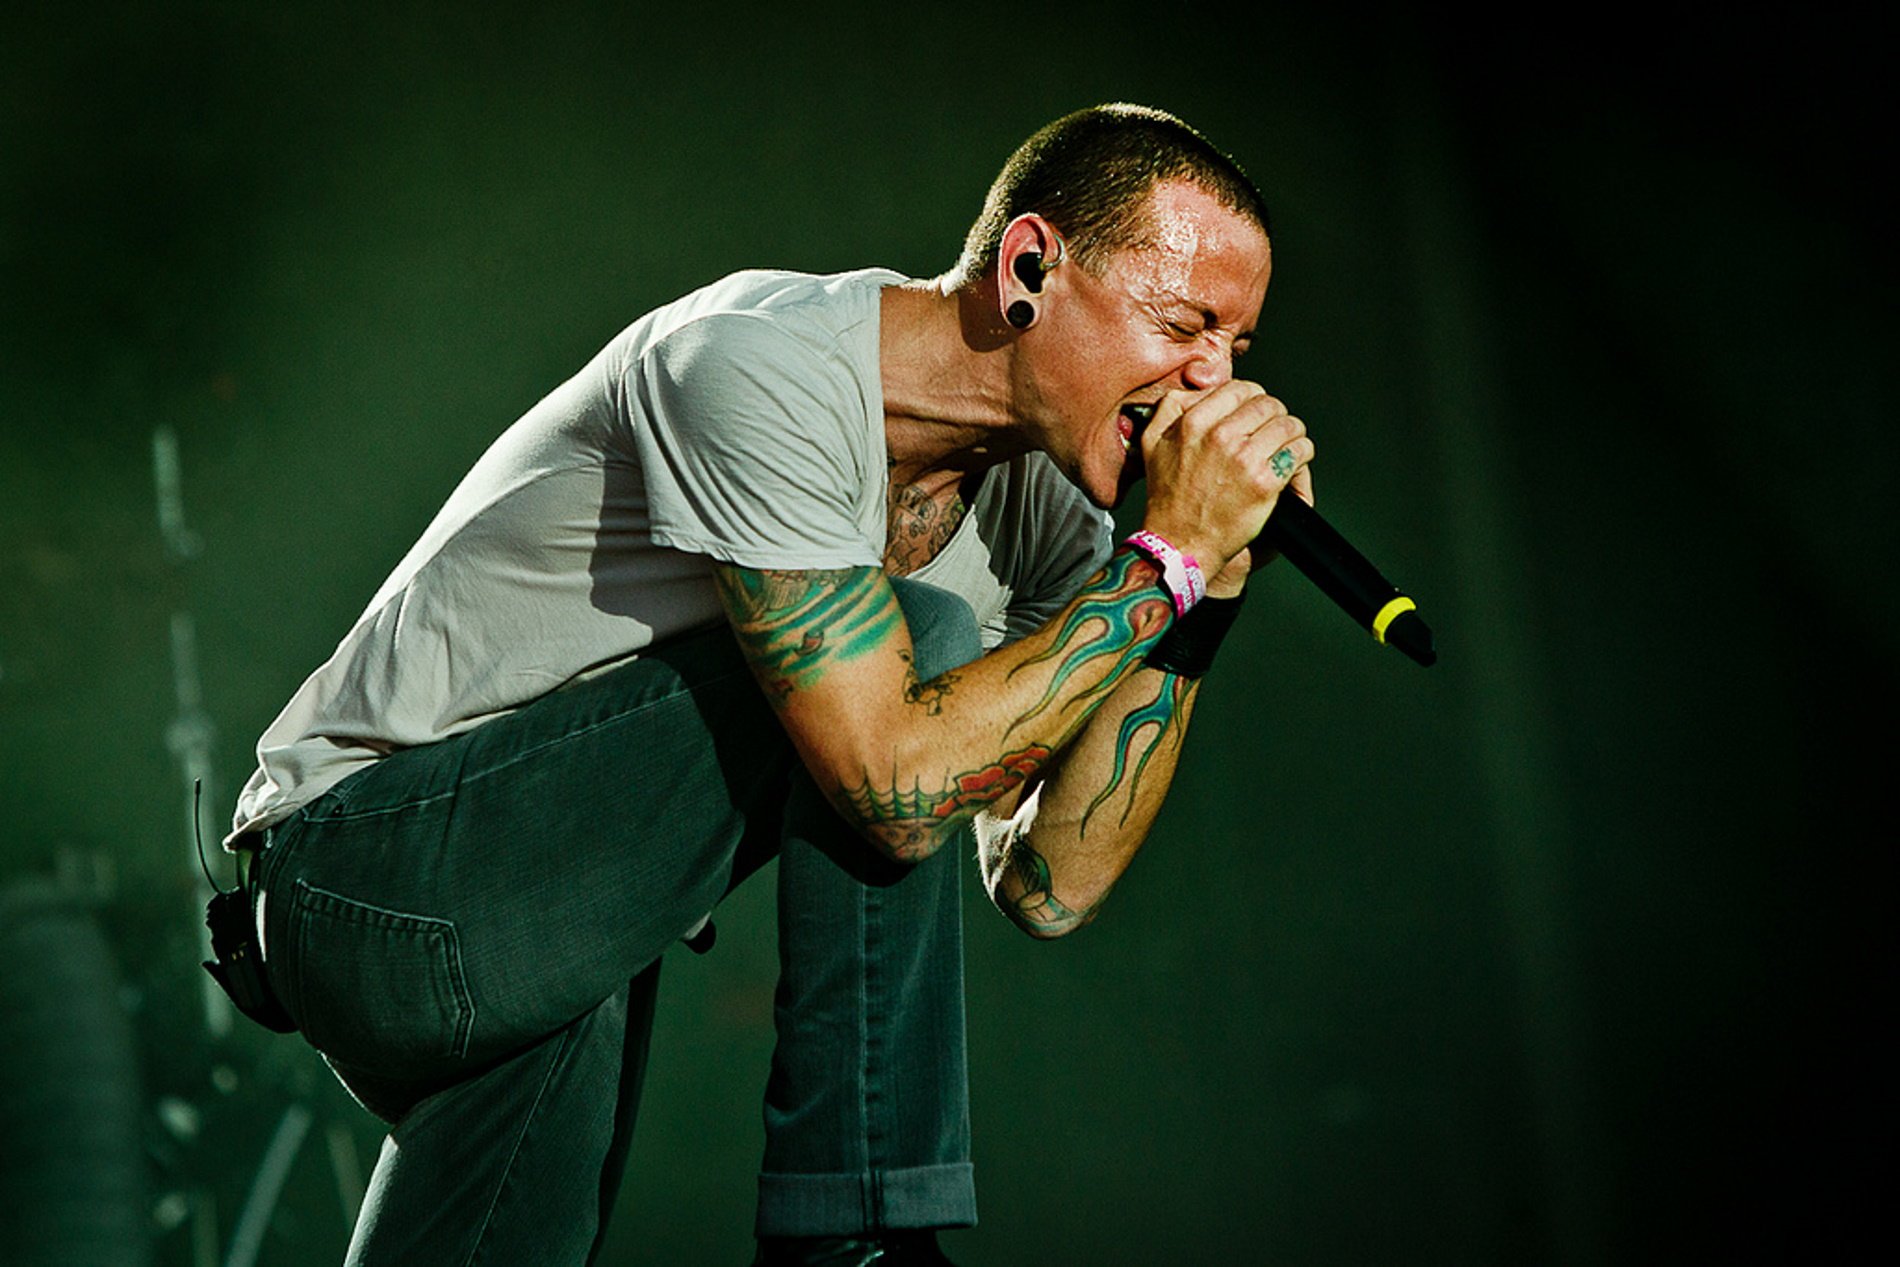 Història d'un suïcidi: les cançons de Linkin Park que expliquen Chester Bennington